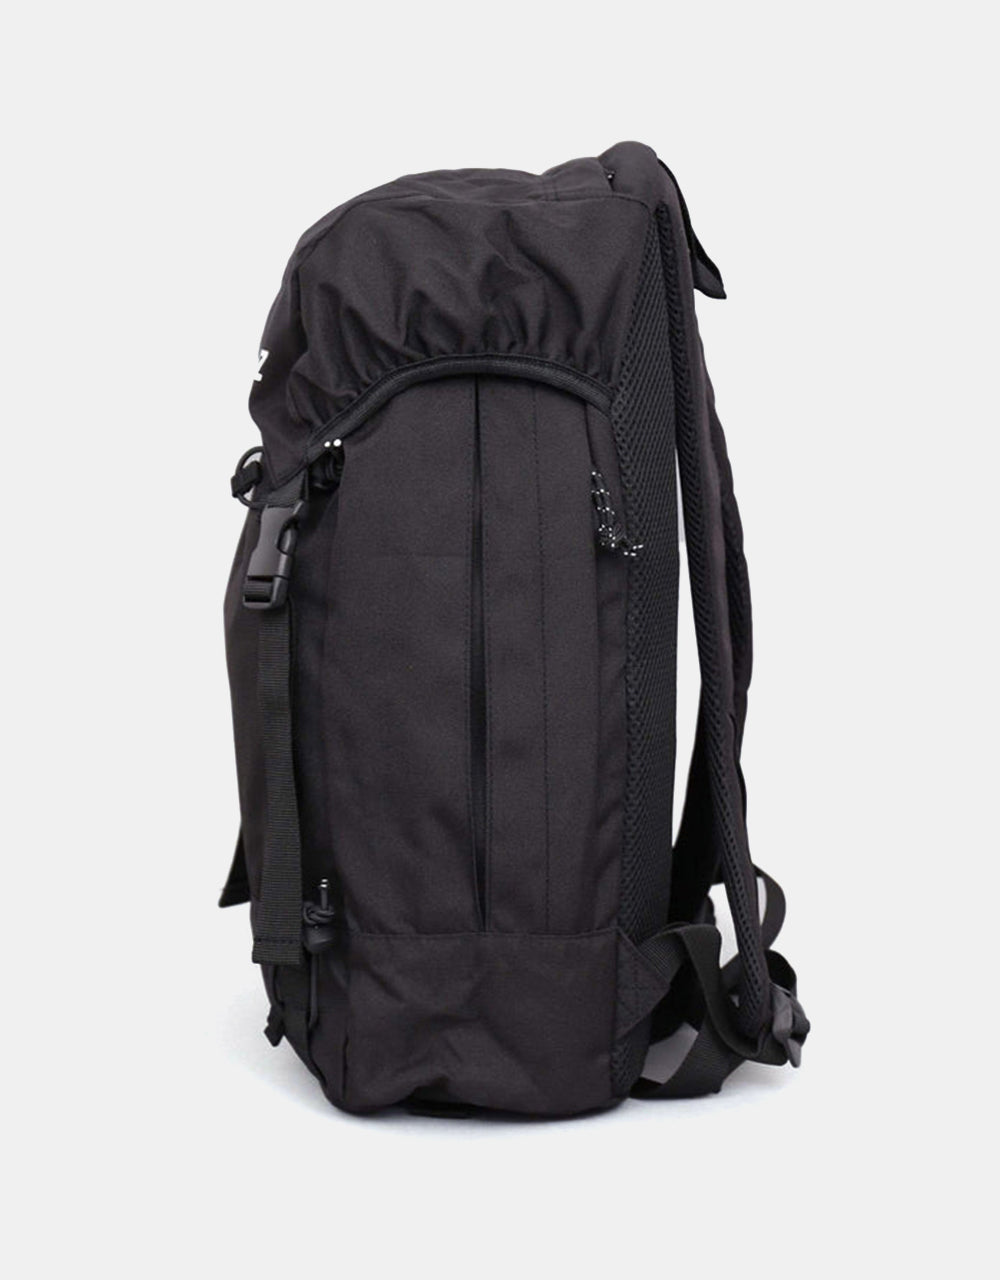 Santa Cruz Trail Backpack - Black